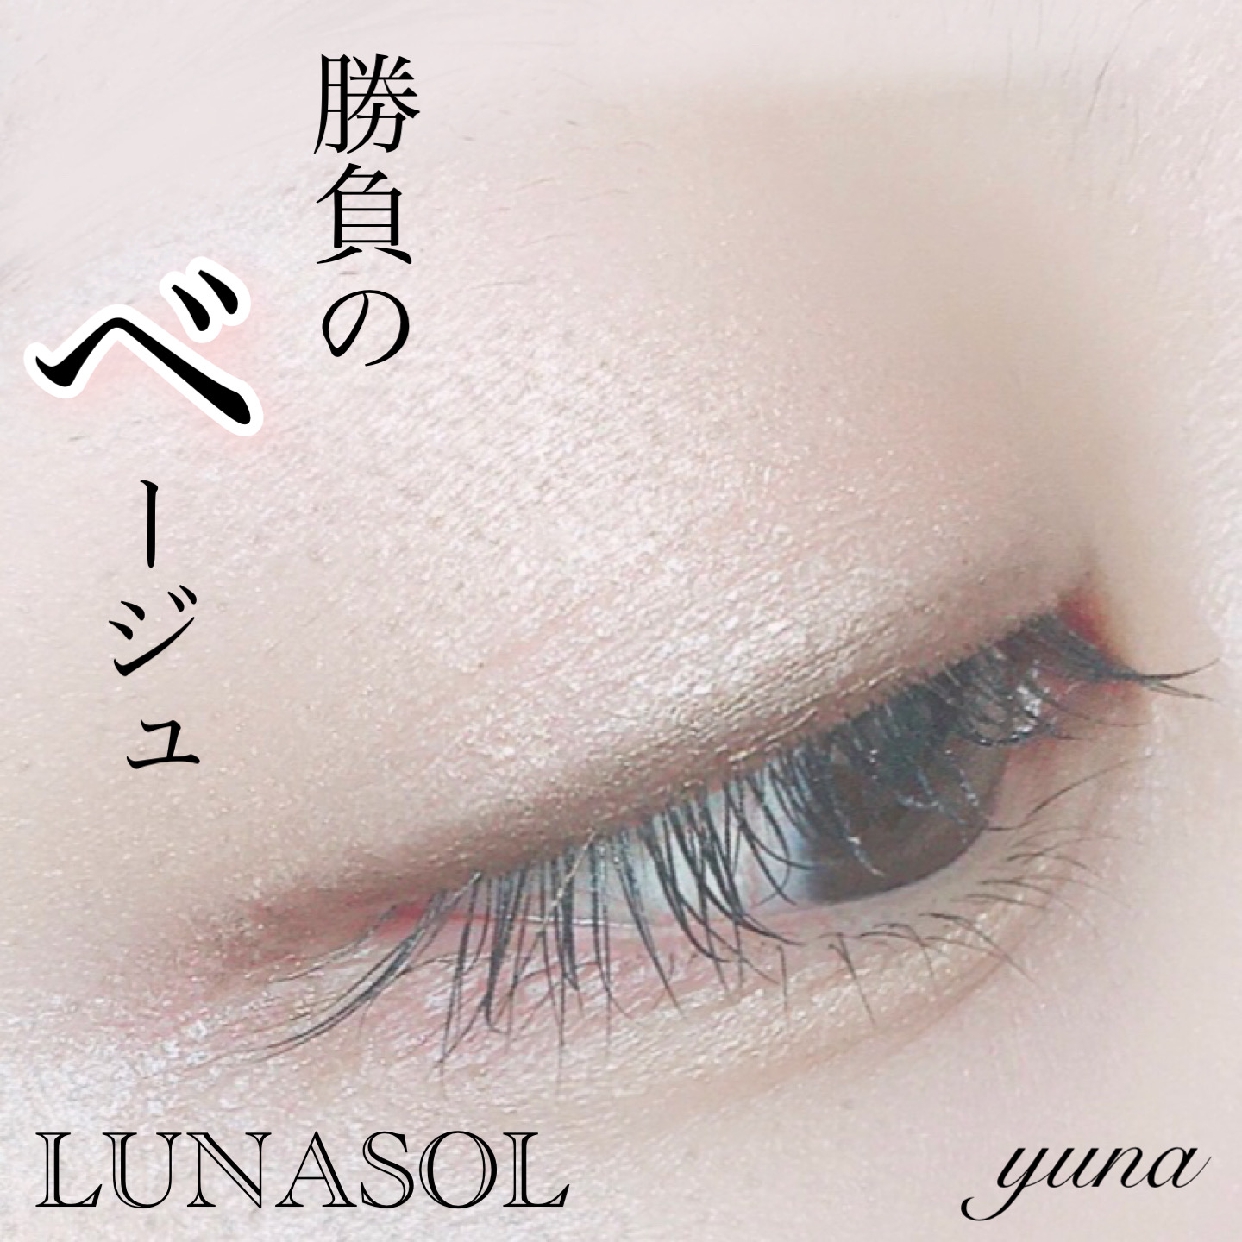 LUNASOL(ルナソル)スキンモデリングアイズを使ったyunaさんのクチコミ画像1